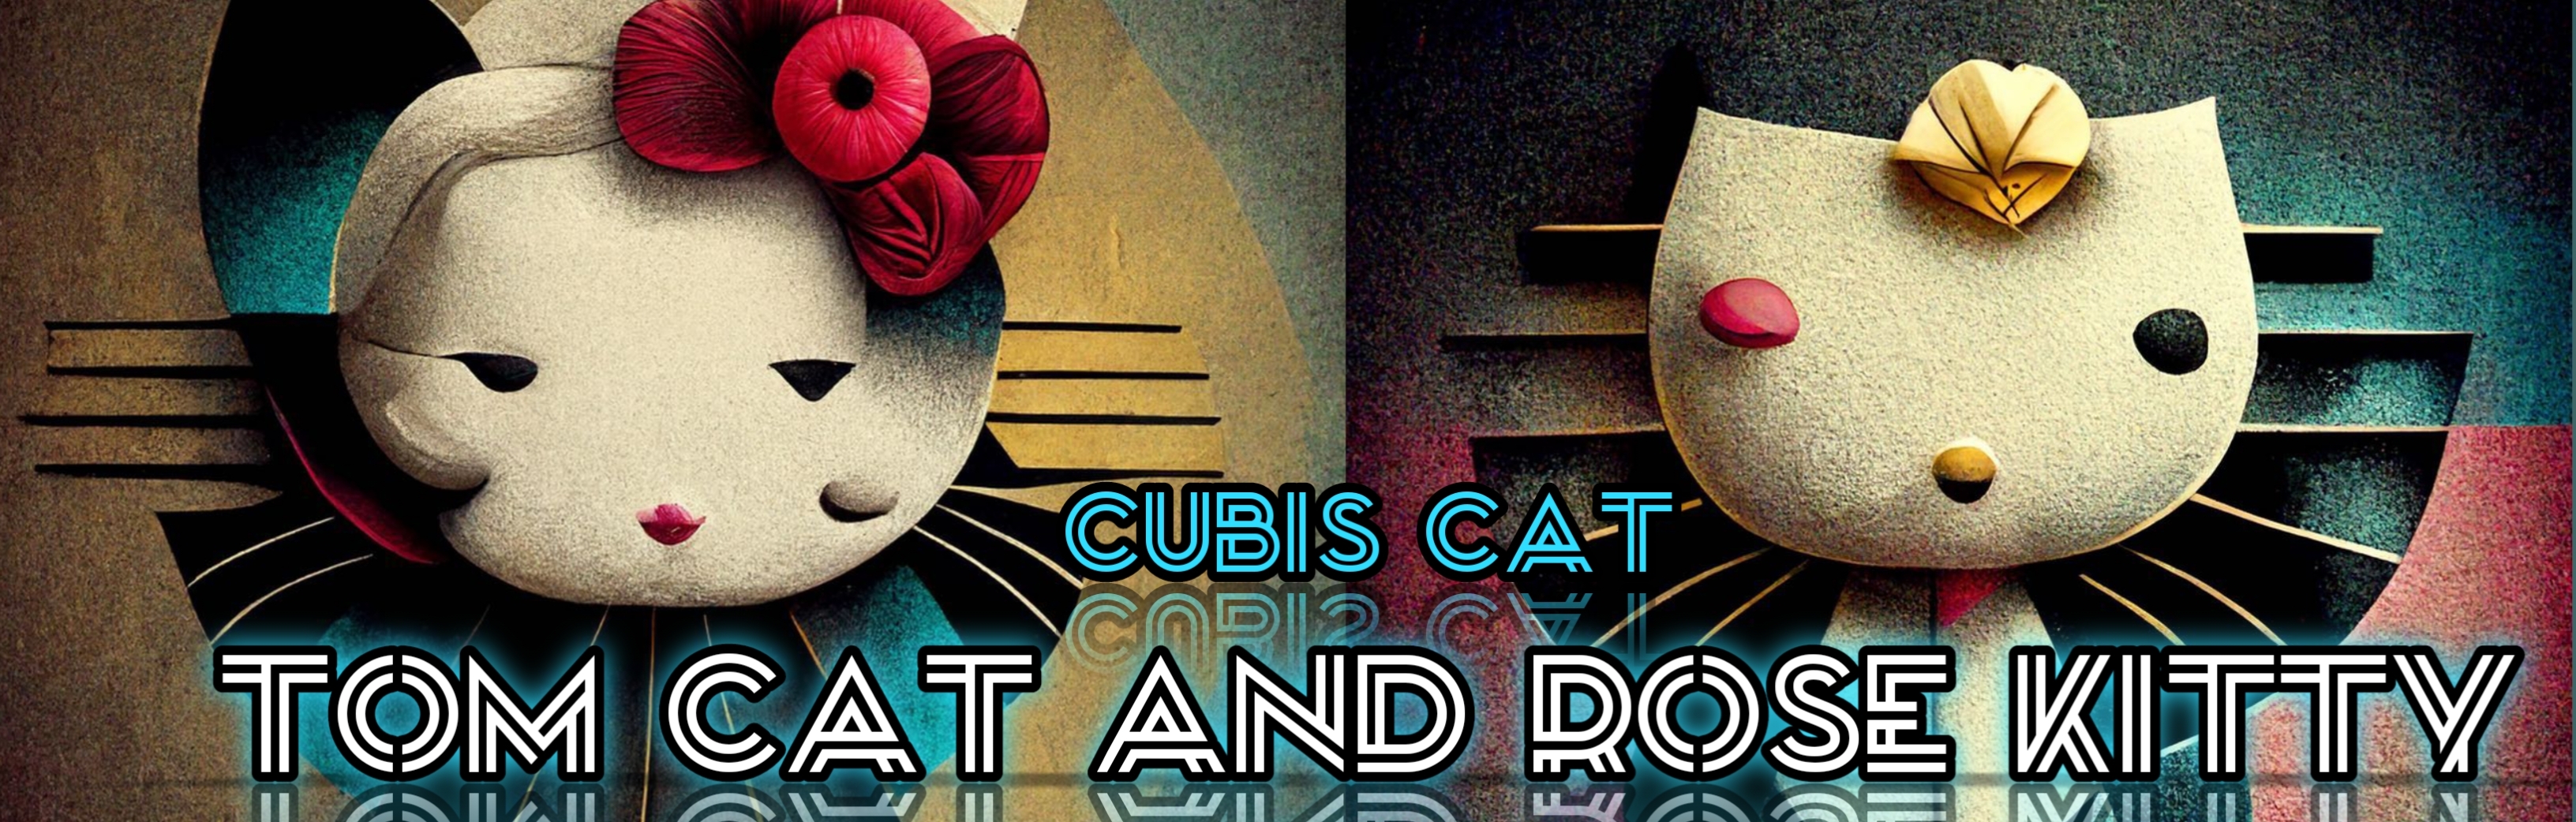 Cubis Cat art banner